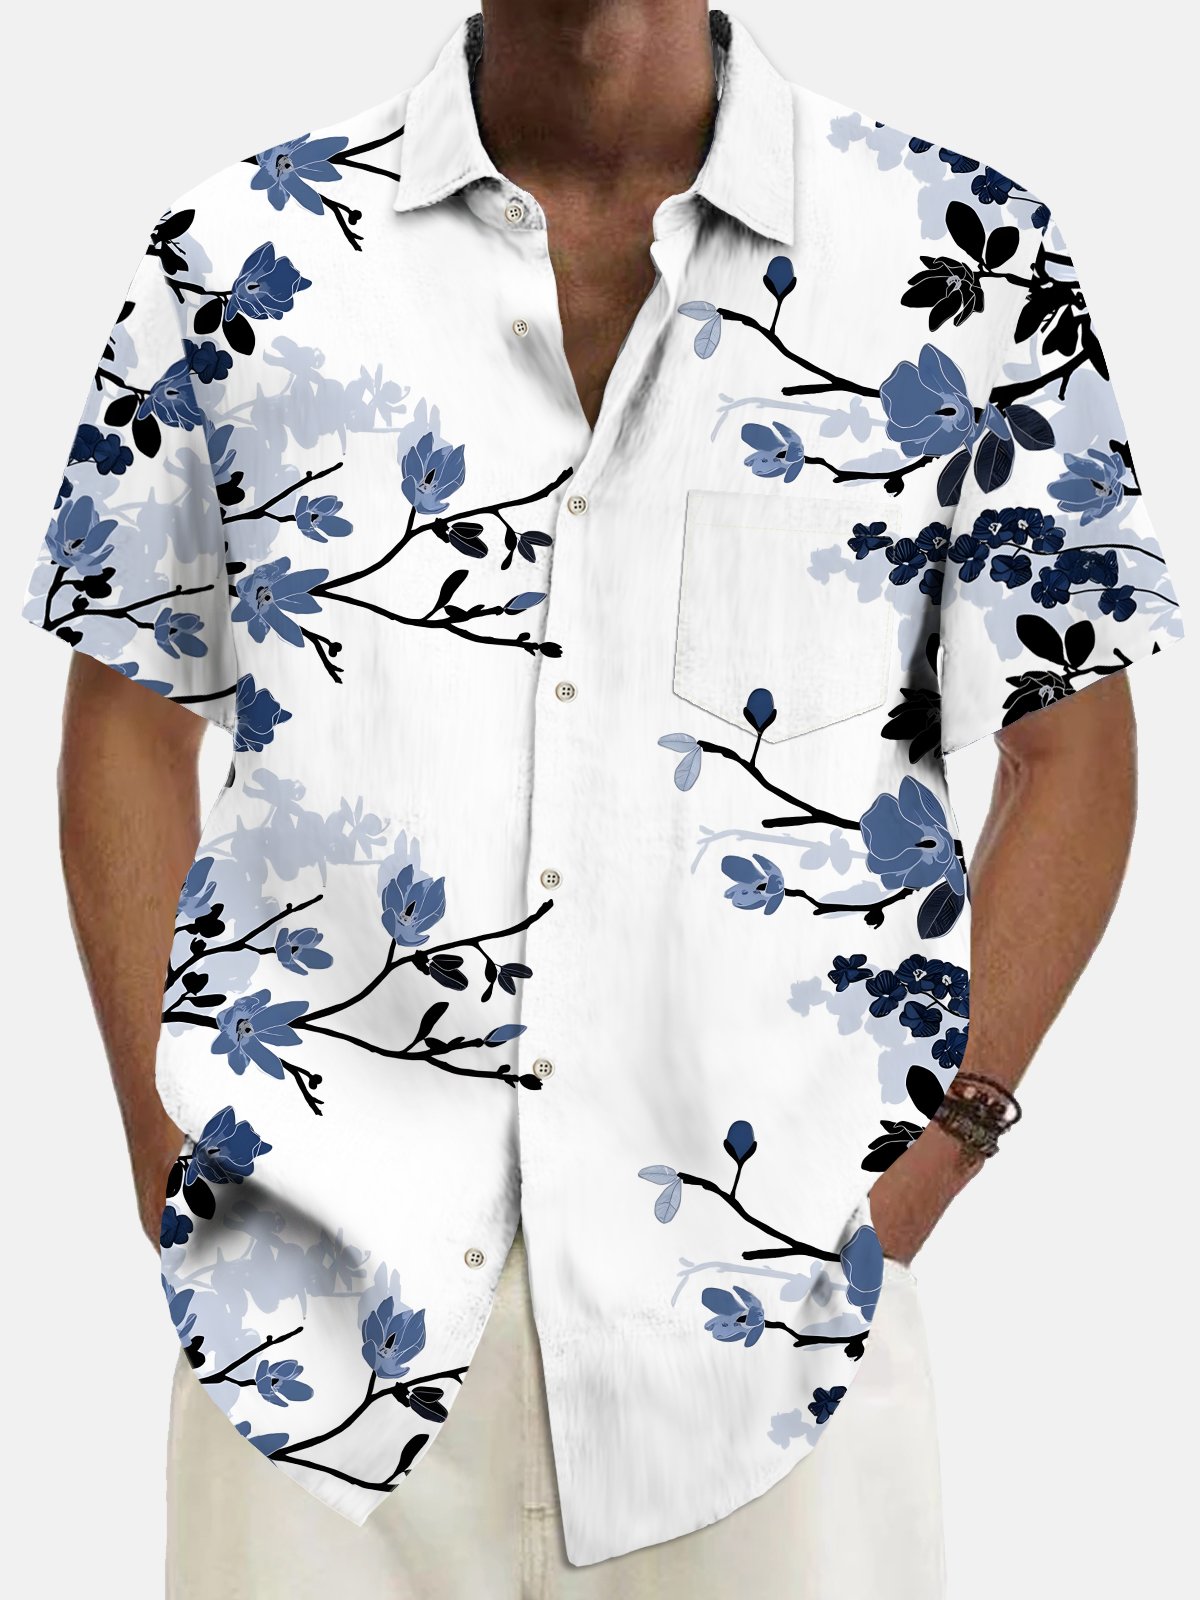 Beach Vacation Men's Hawaiian Shirt Botanical Floral Print Pocket Camping Shirt